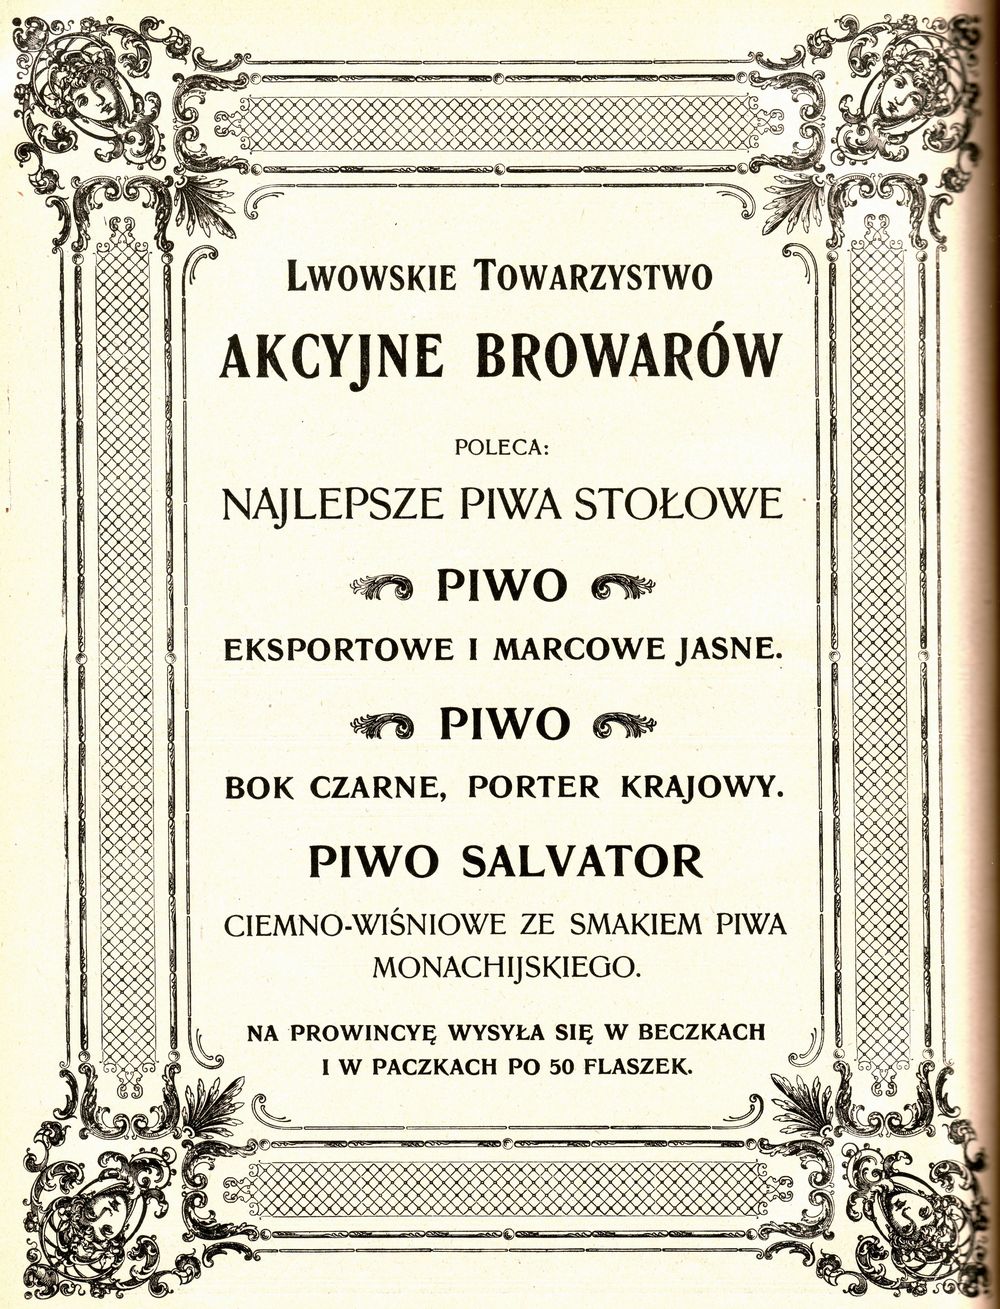 Reklama Lwowskiego Towarzystwa Akcyjnego